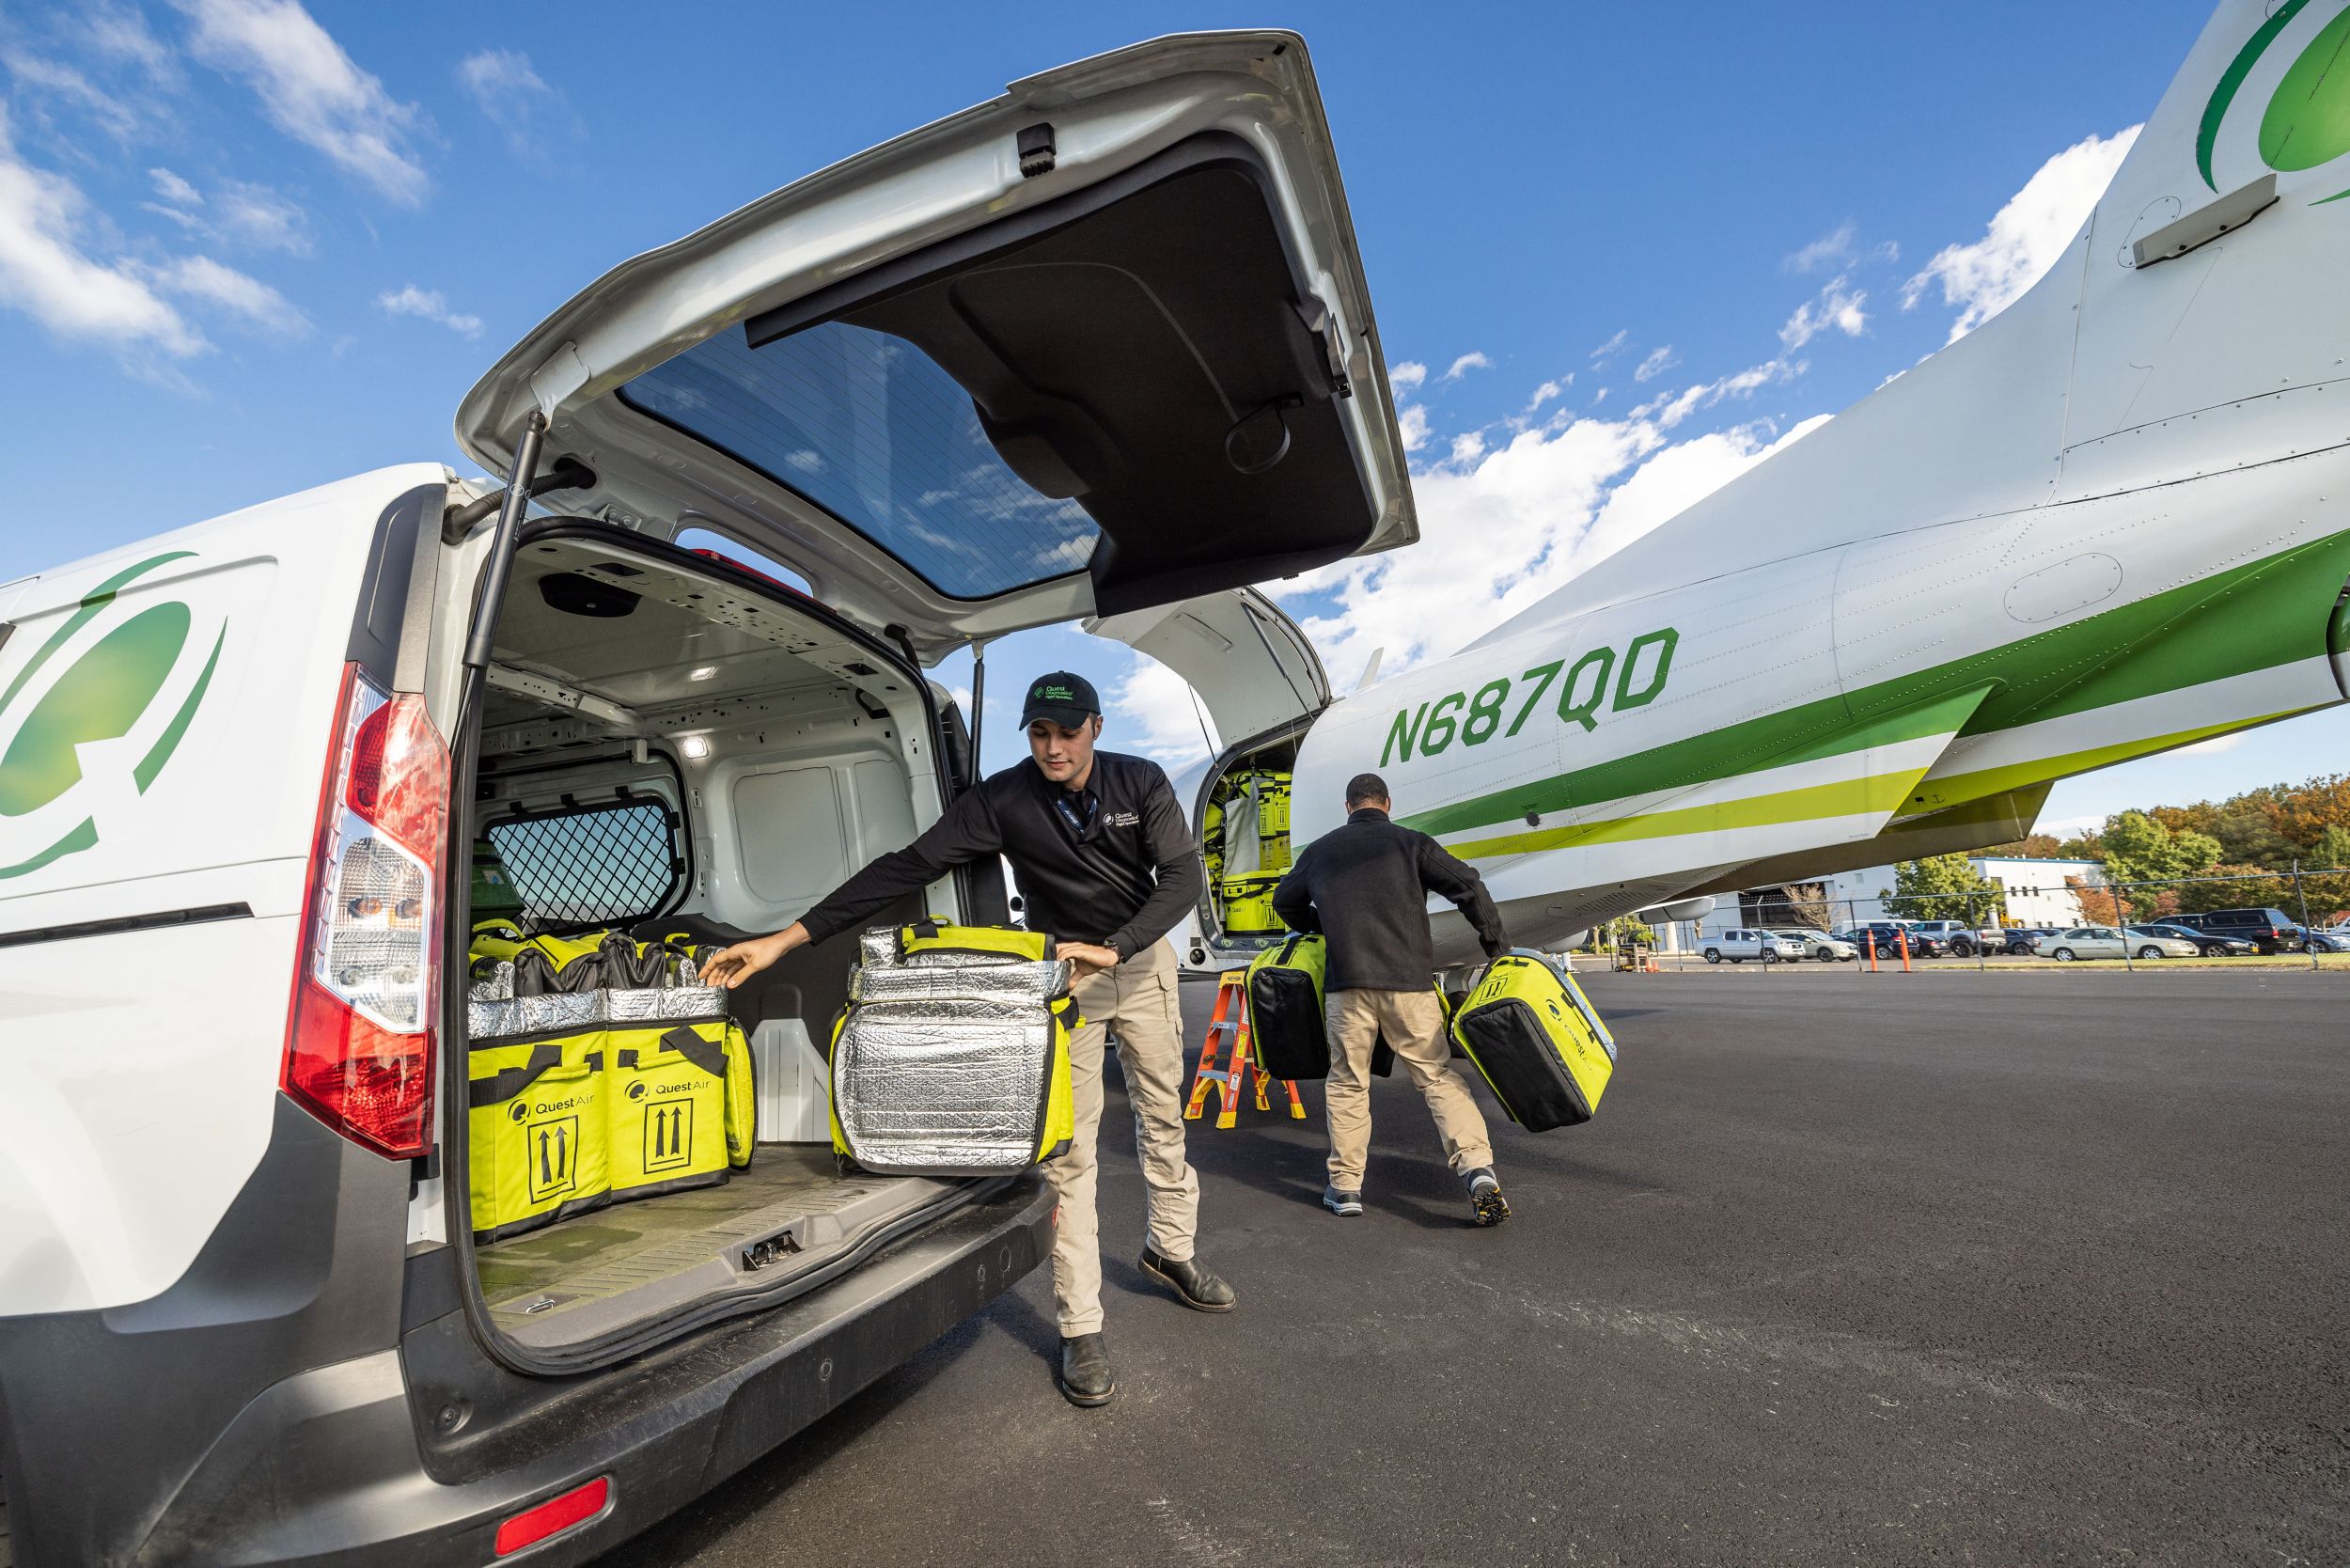 Quest pilot and RSR unloading plane in Manassas, VA